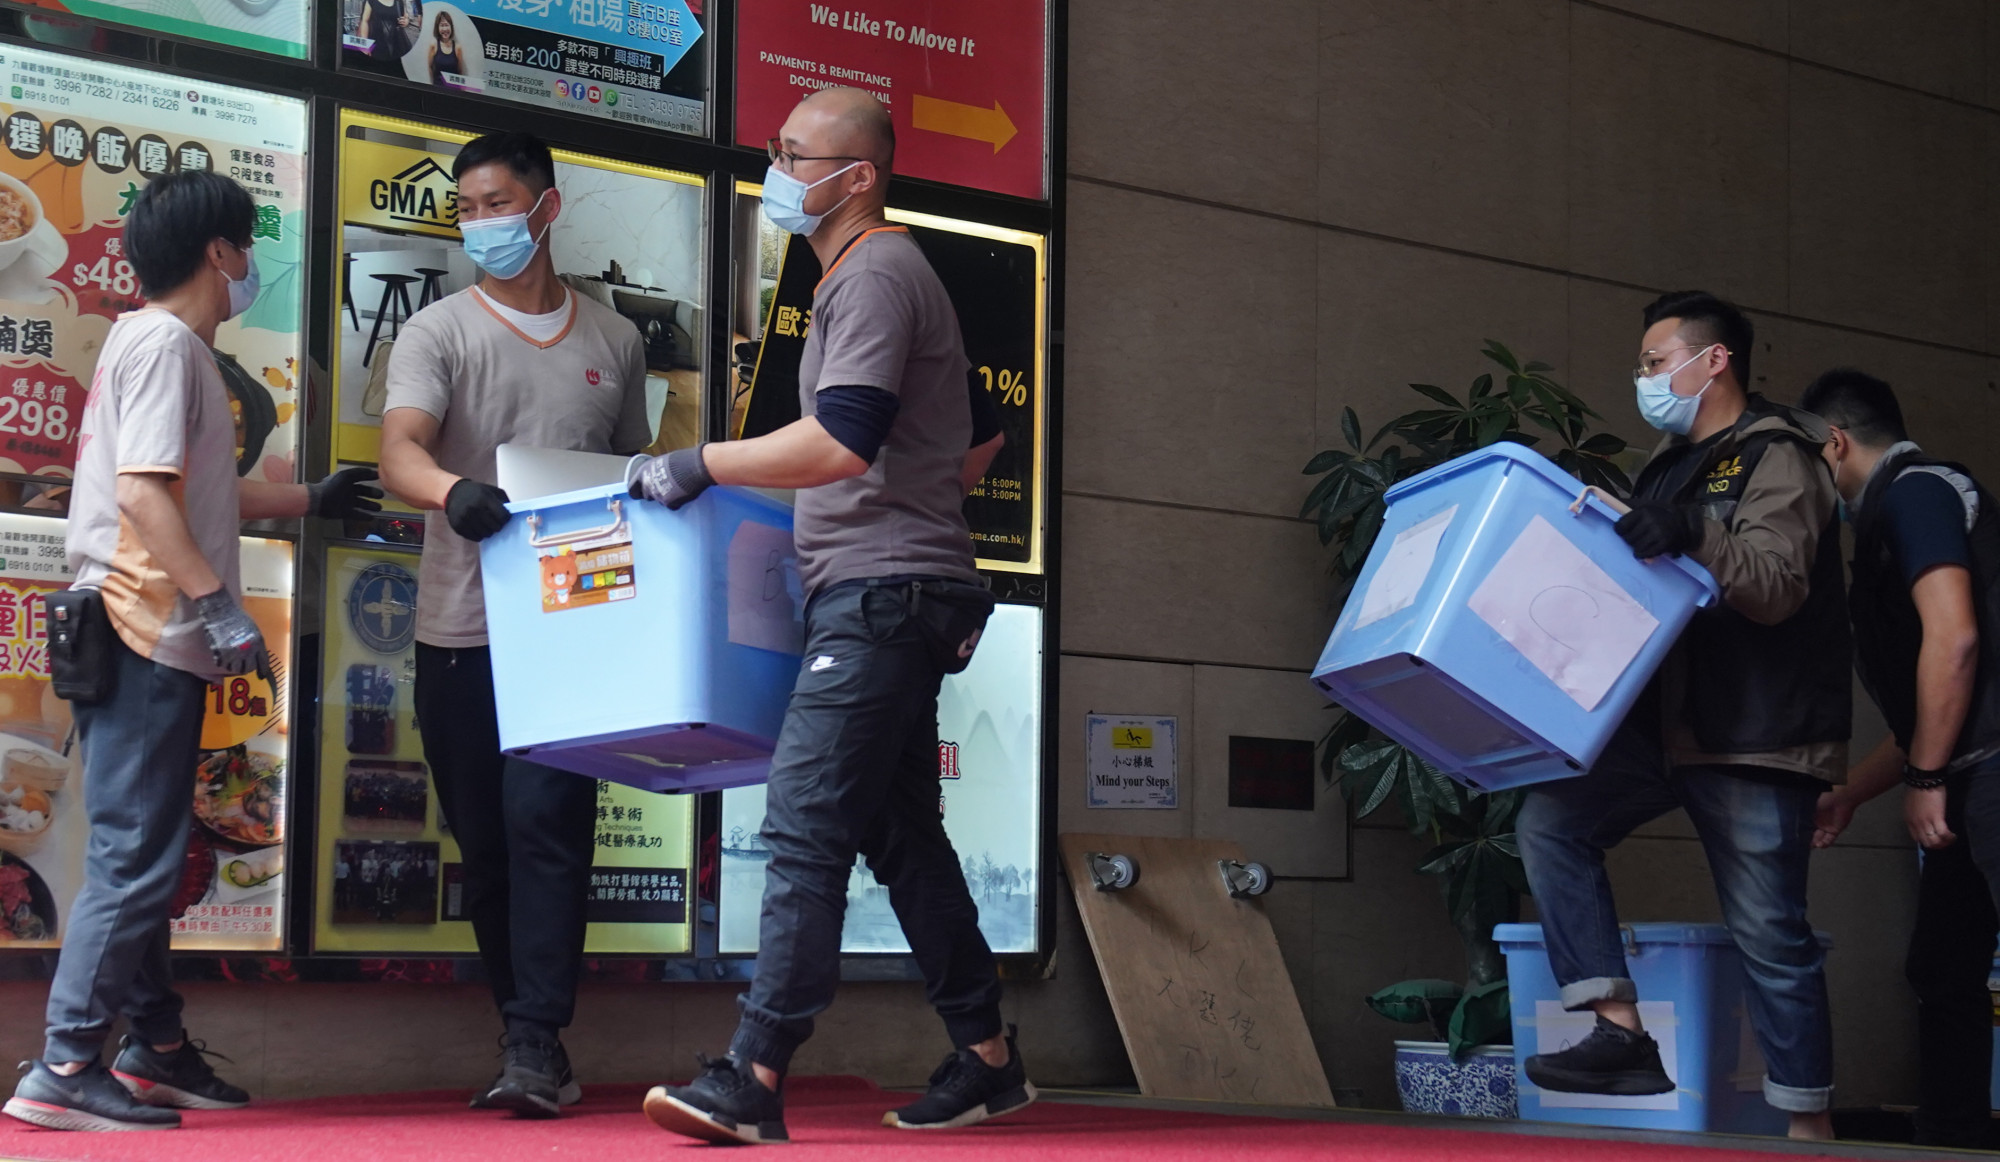 Le autorità di Hong Kong hanno risposto alle accuse di “attacchi continui” alla libertà di stampa dopo che 24 paesi hanno firmato una dichiarazione in cui accusano la città di limitare i media.